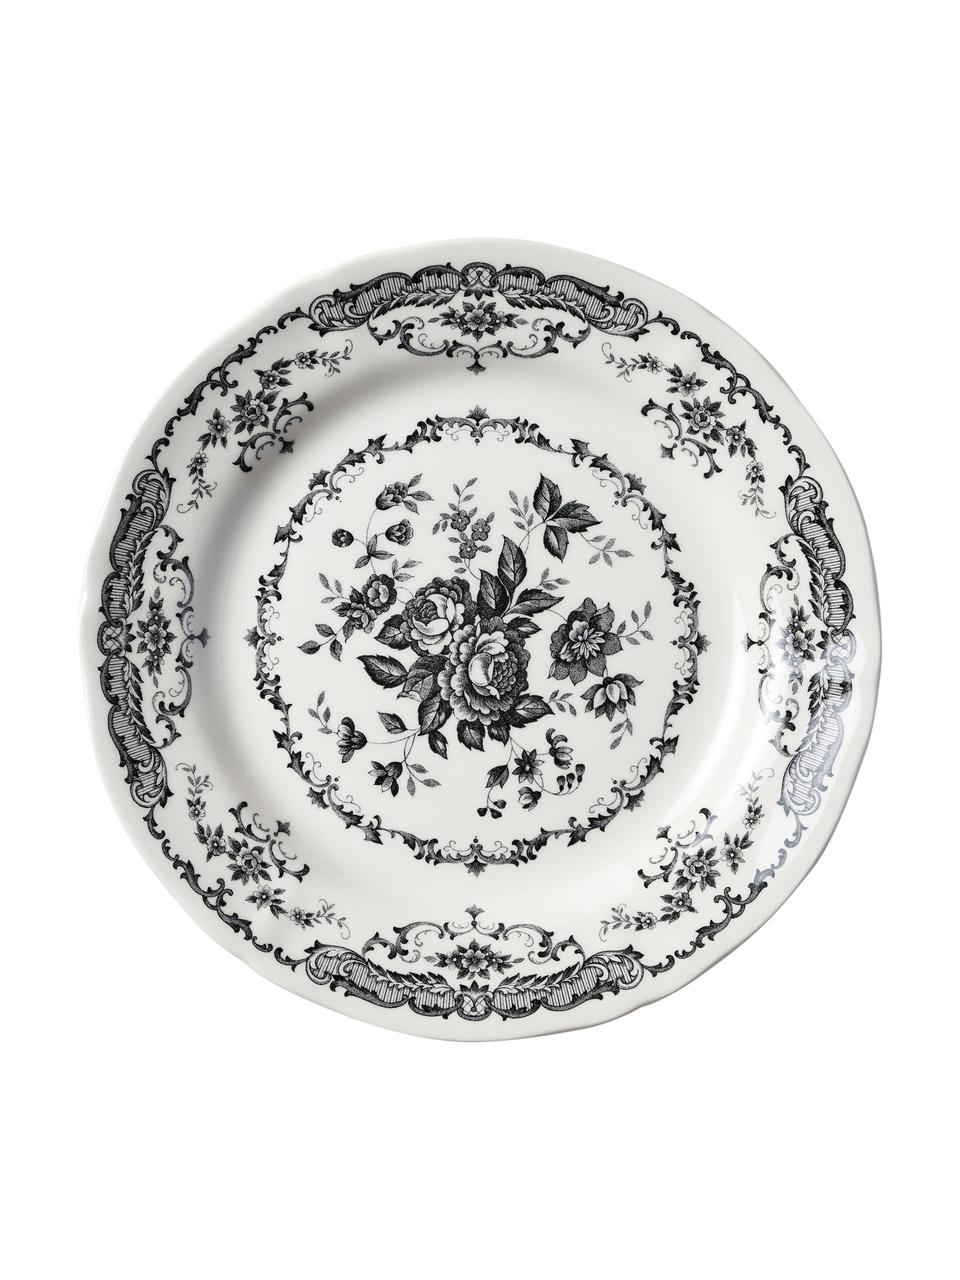 Dinerbord en Rose met bloemmotief in wit/zwart 2 stuks, Keramiek, Wit, zwart, Ø 26 x H 2 cm